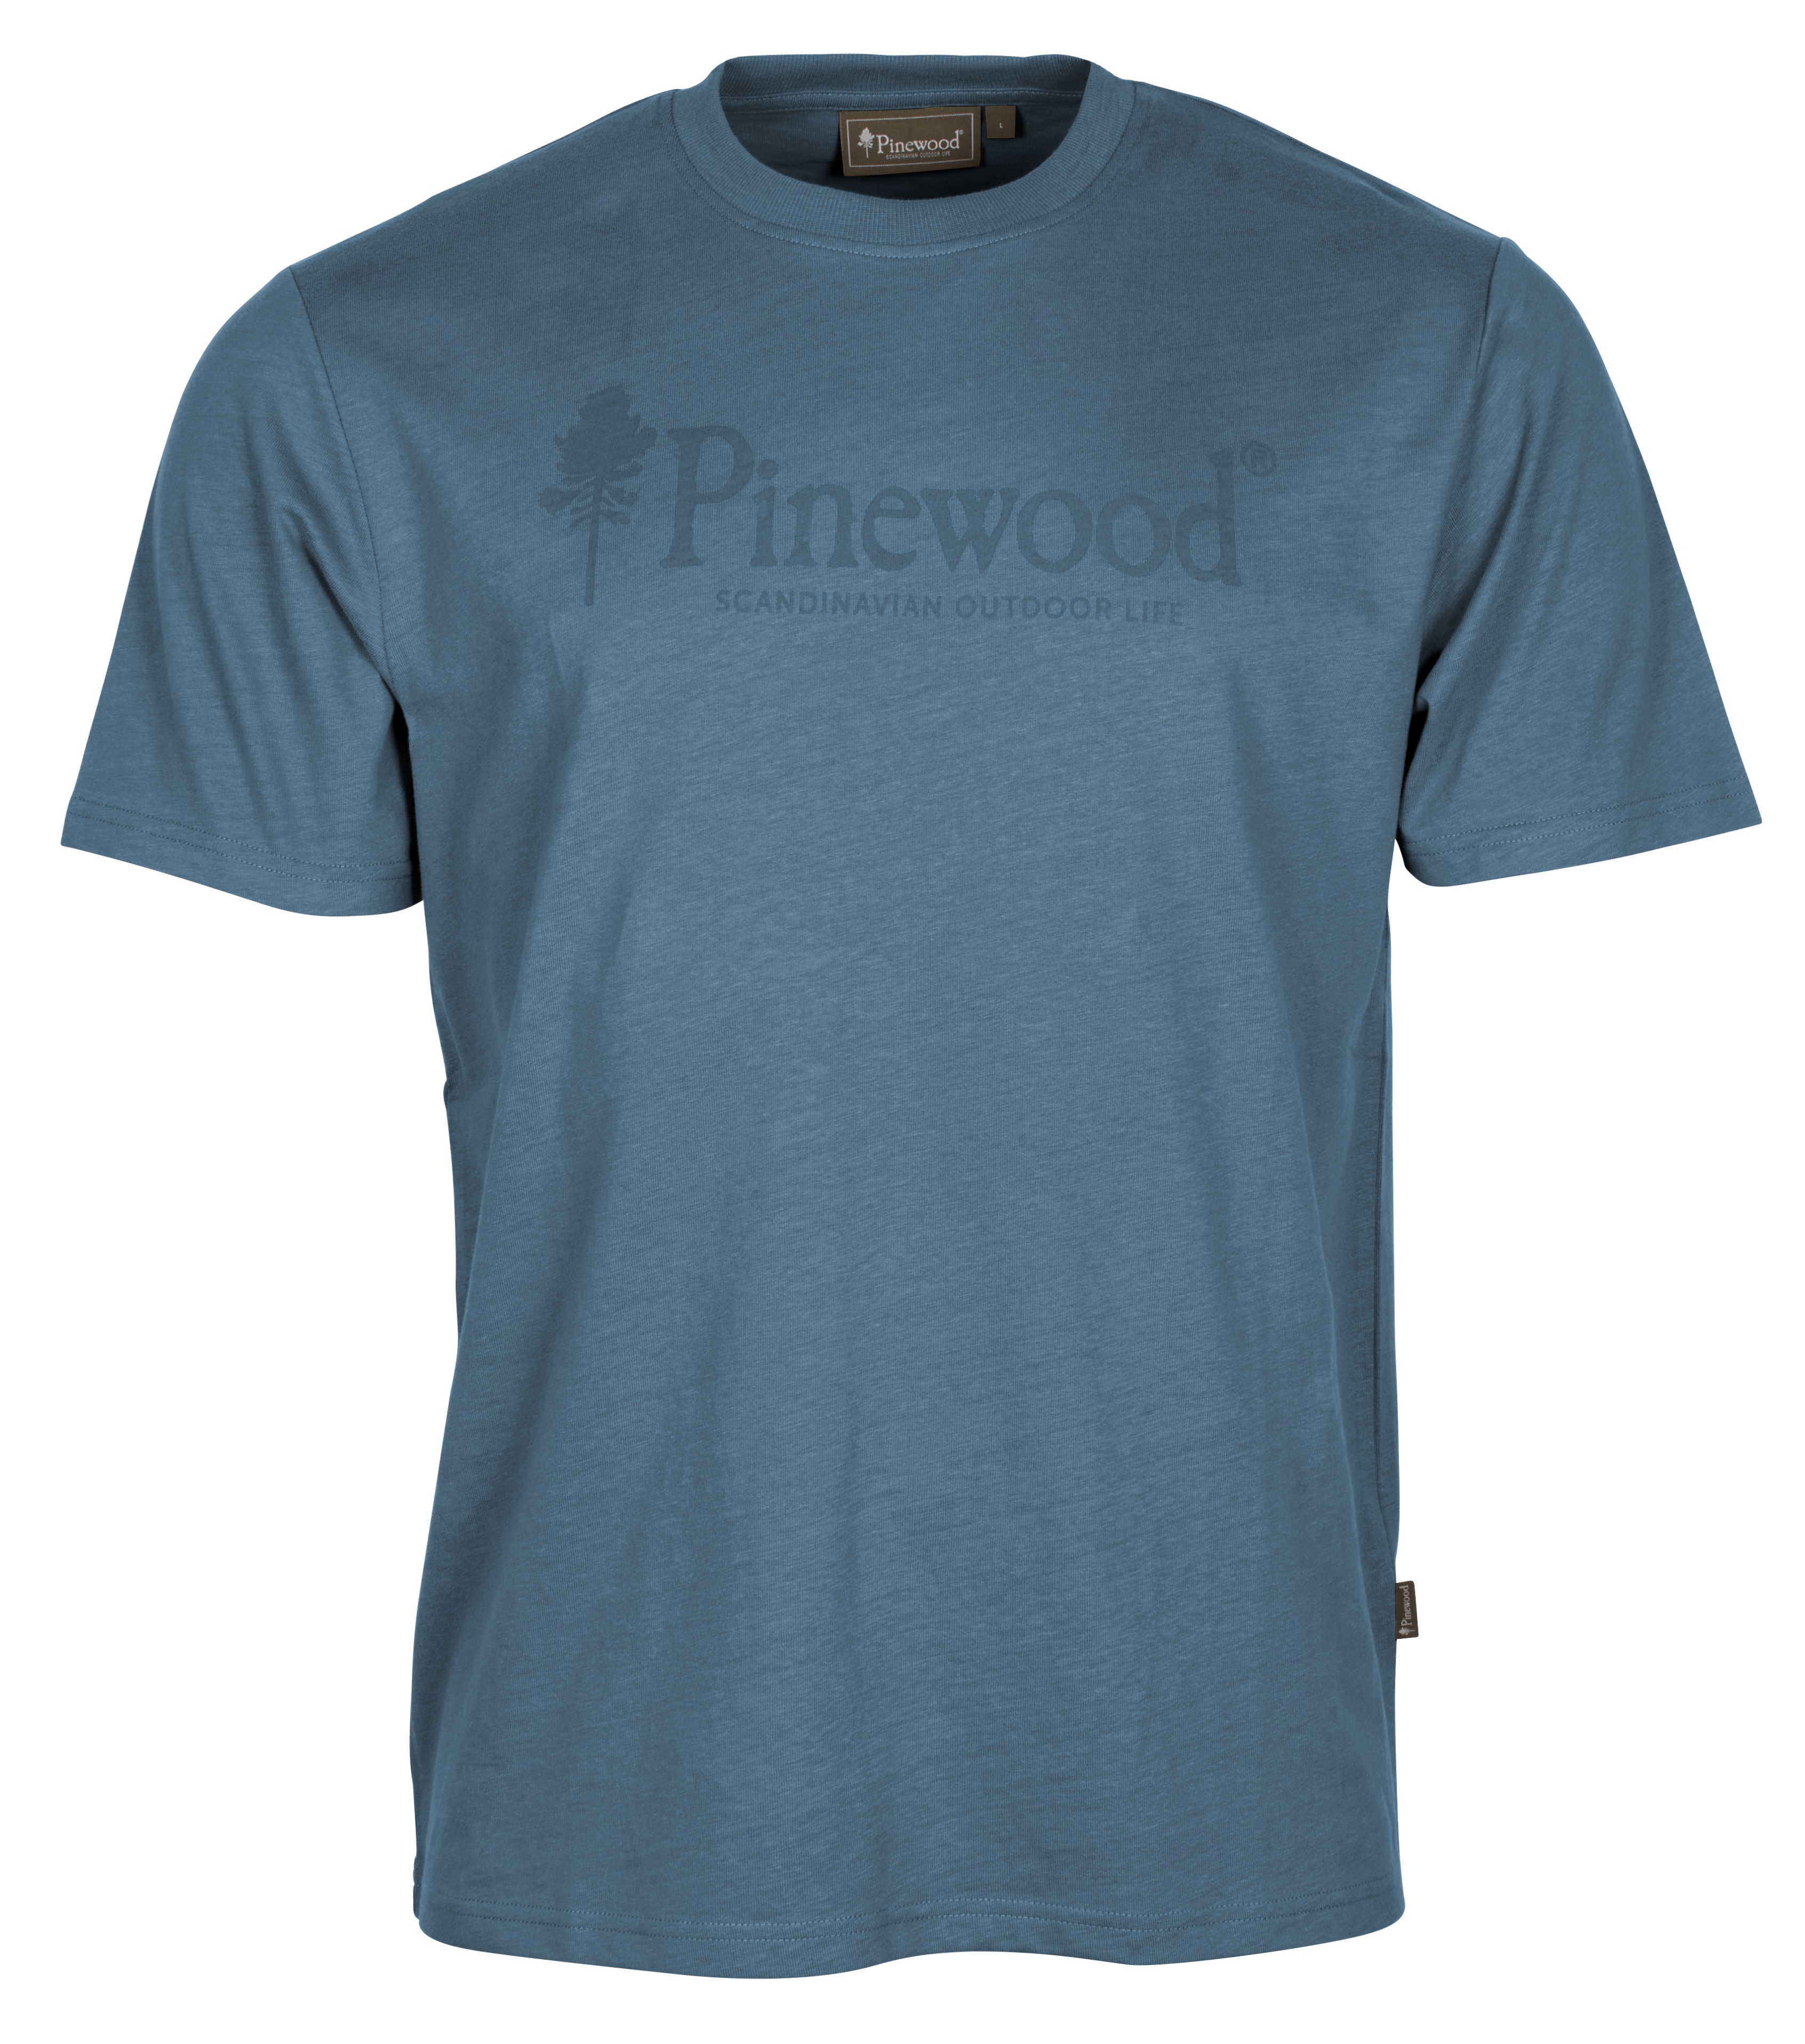 Pinewood Men’s Outdoor Life T-shirt Azur Blue